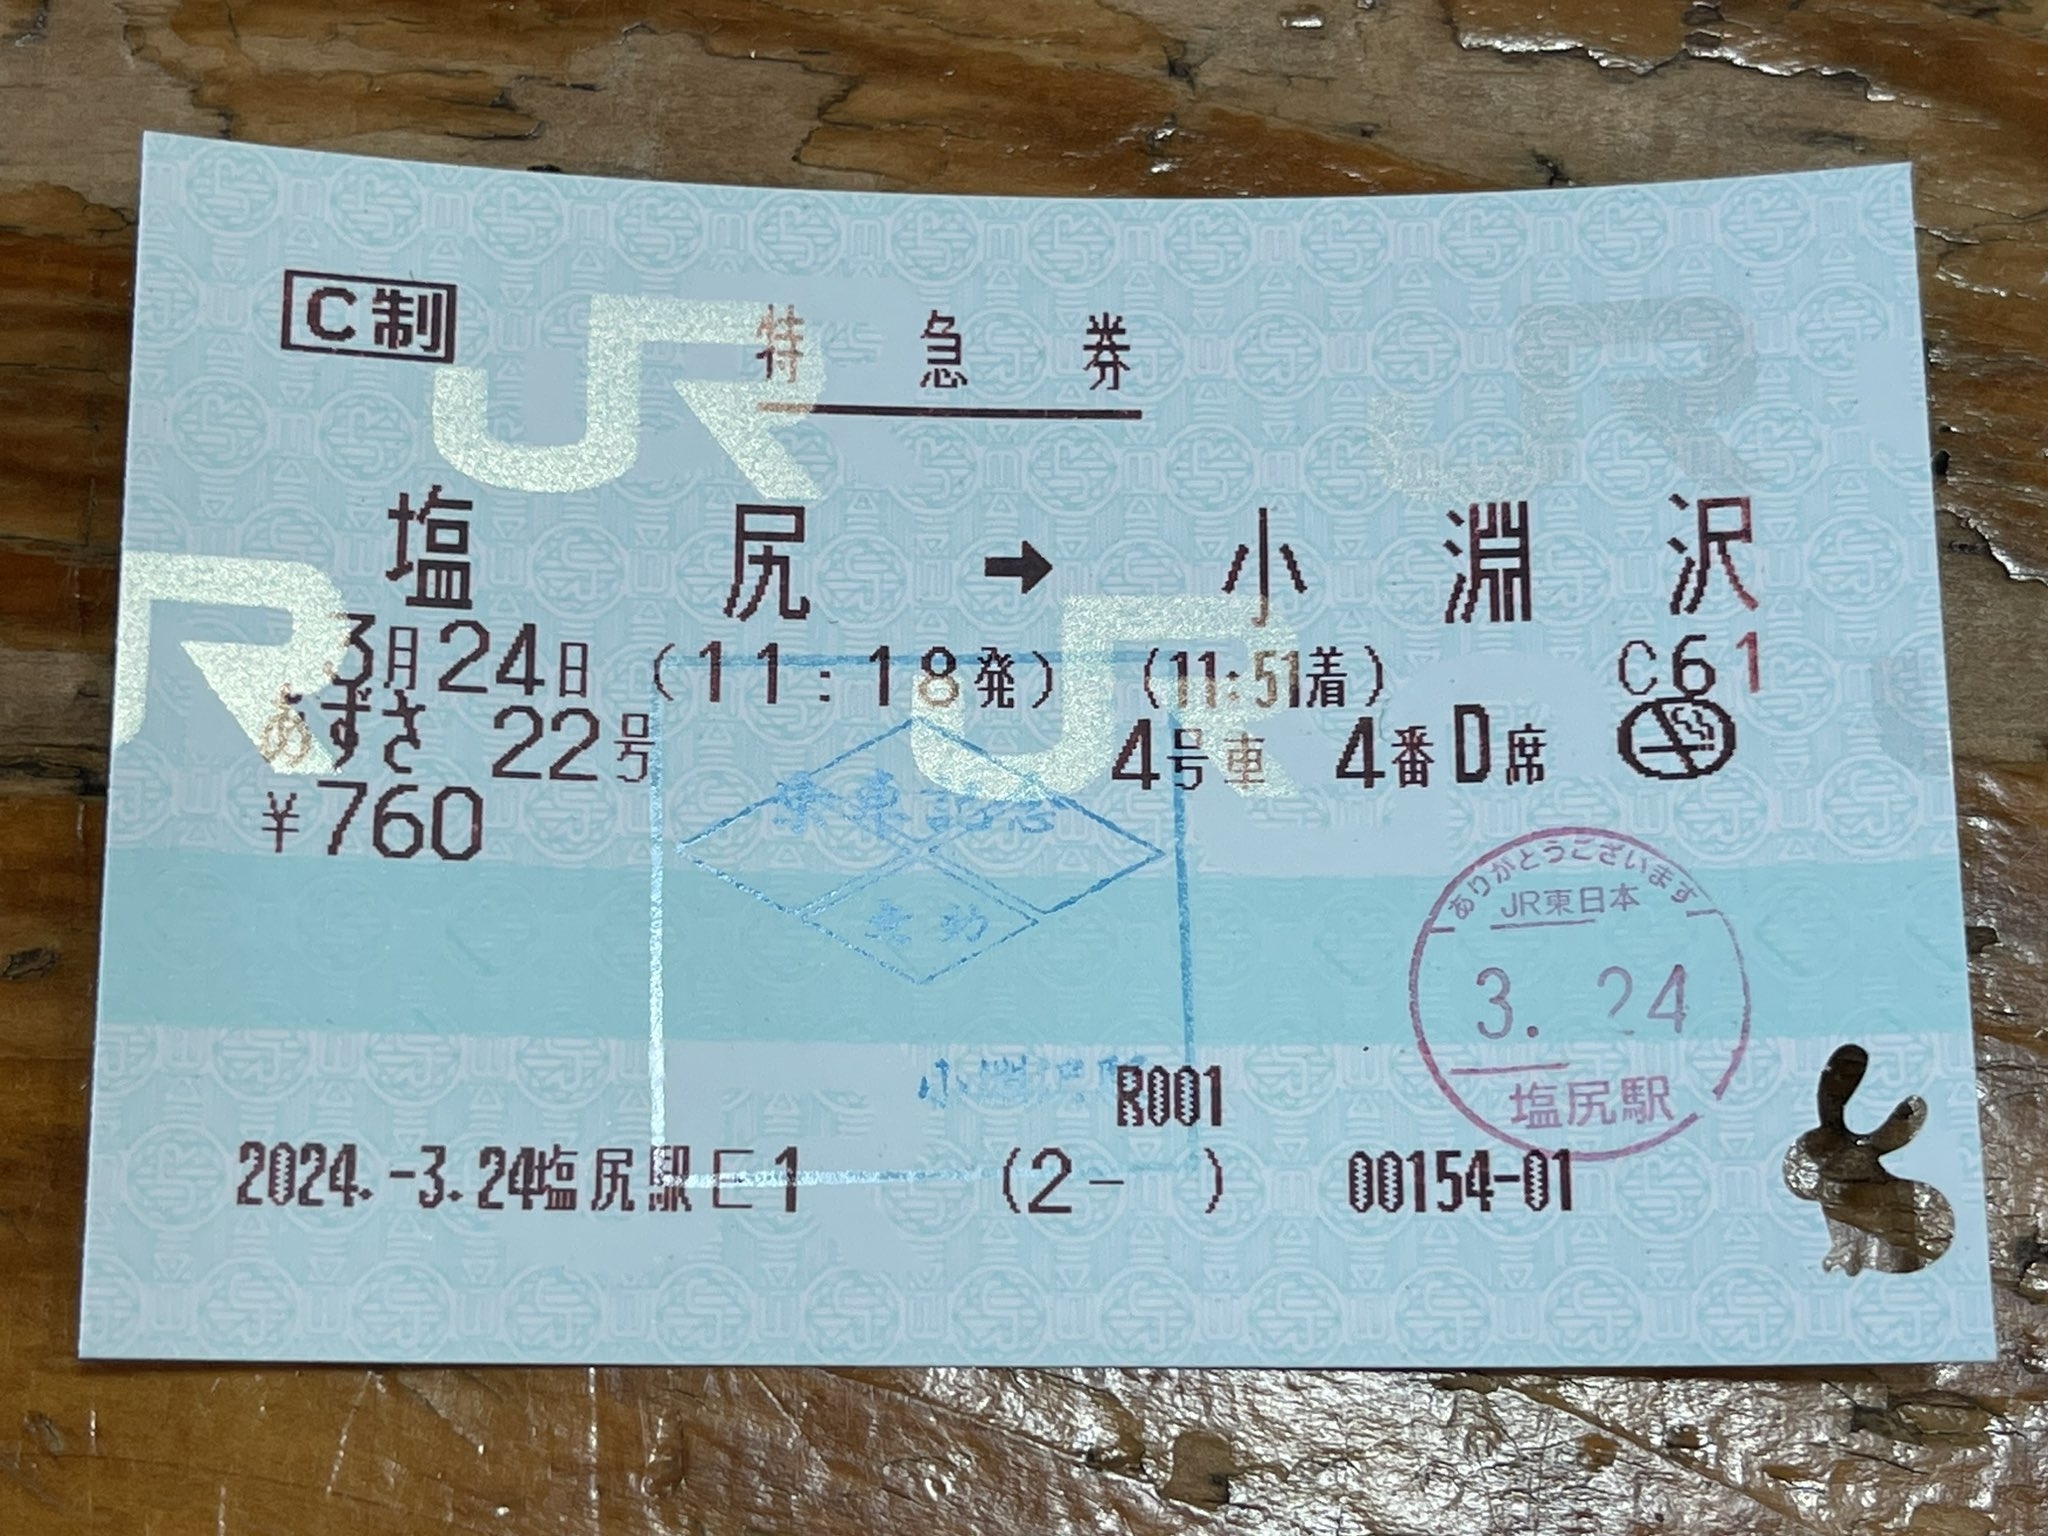 画像内のテキストの要約: 切符には日付、列車番号、座席指定などの情報が記載されています。